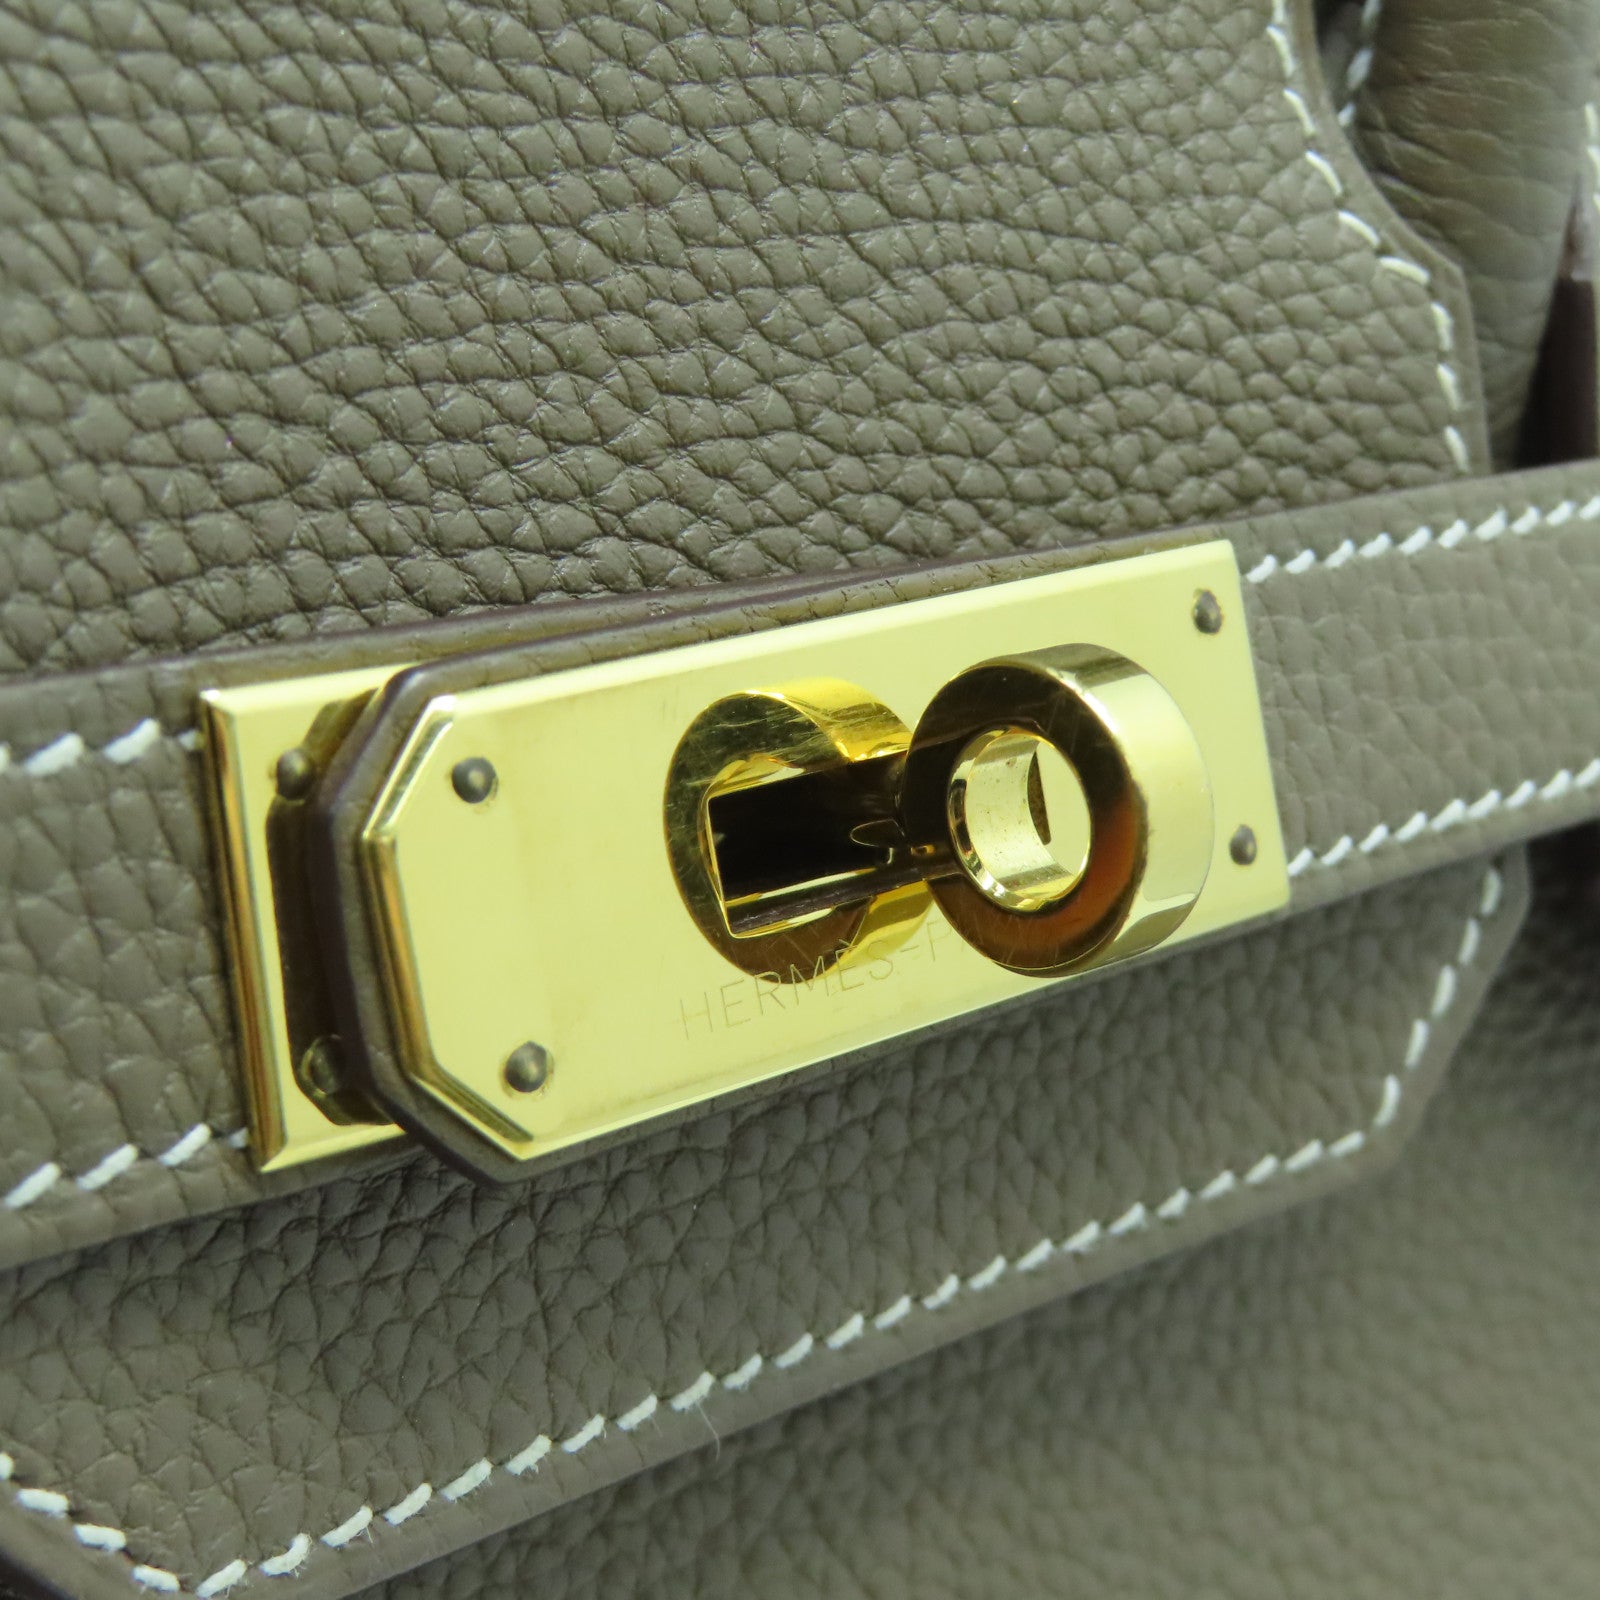 Hermes Birkin 30 Bag Sage (Sauge) Clemence Leather Gold Hardware